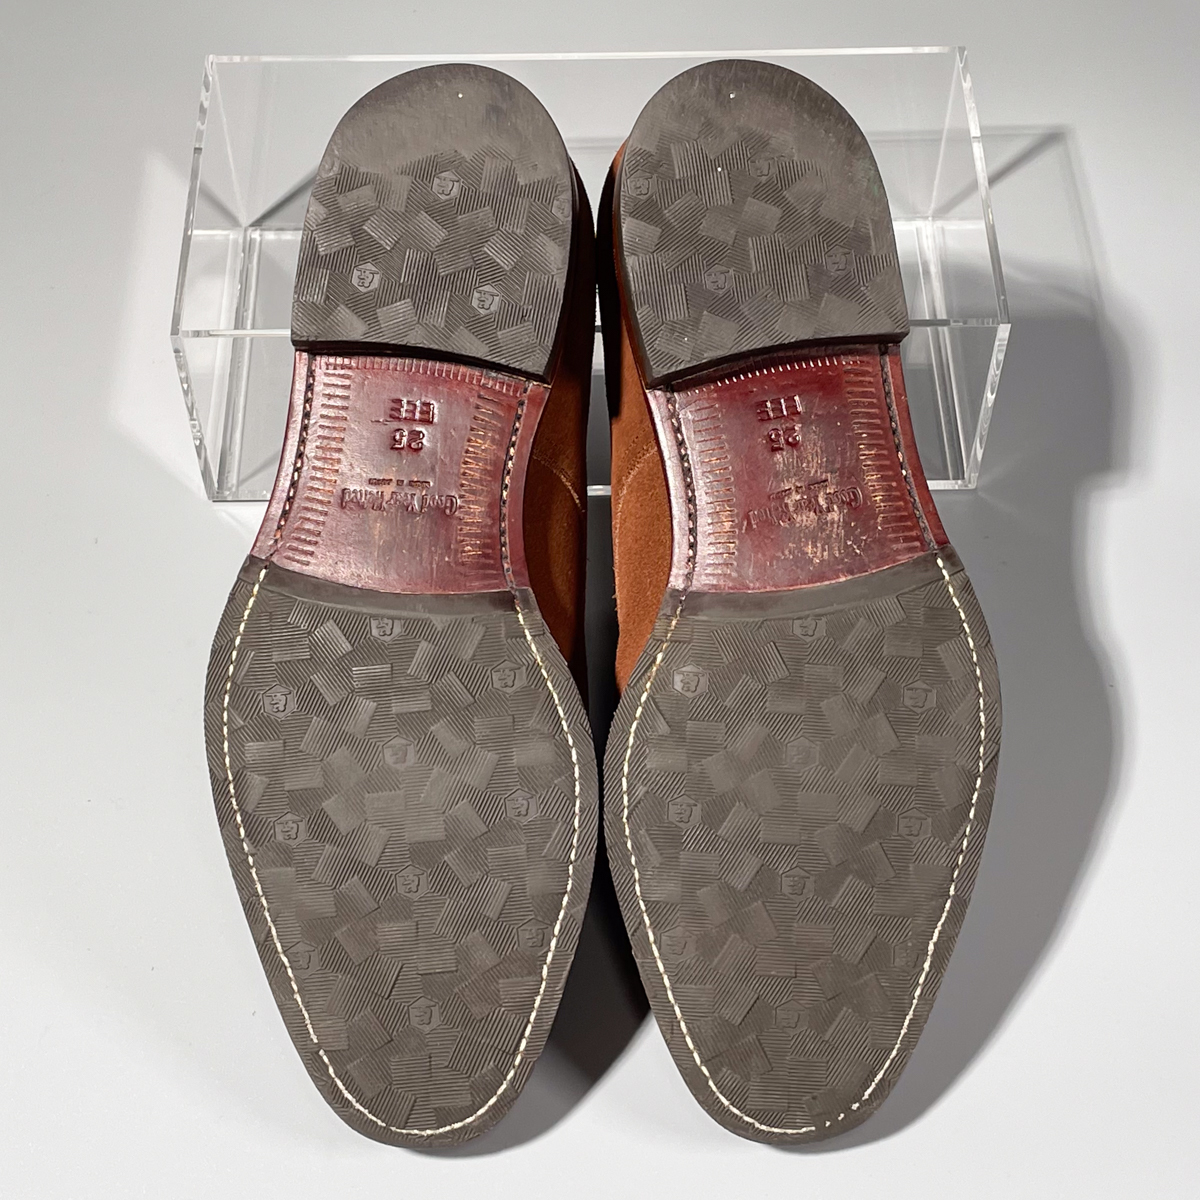 即決 SCOTCH GRAIN スコッチグレイン Uチップ ブラウン 茶色 メンズ 本革 スエード 革靴 25cm ビジネスシューズ フォーマル 紳士靴 A1755_画像7